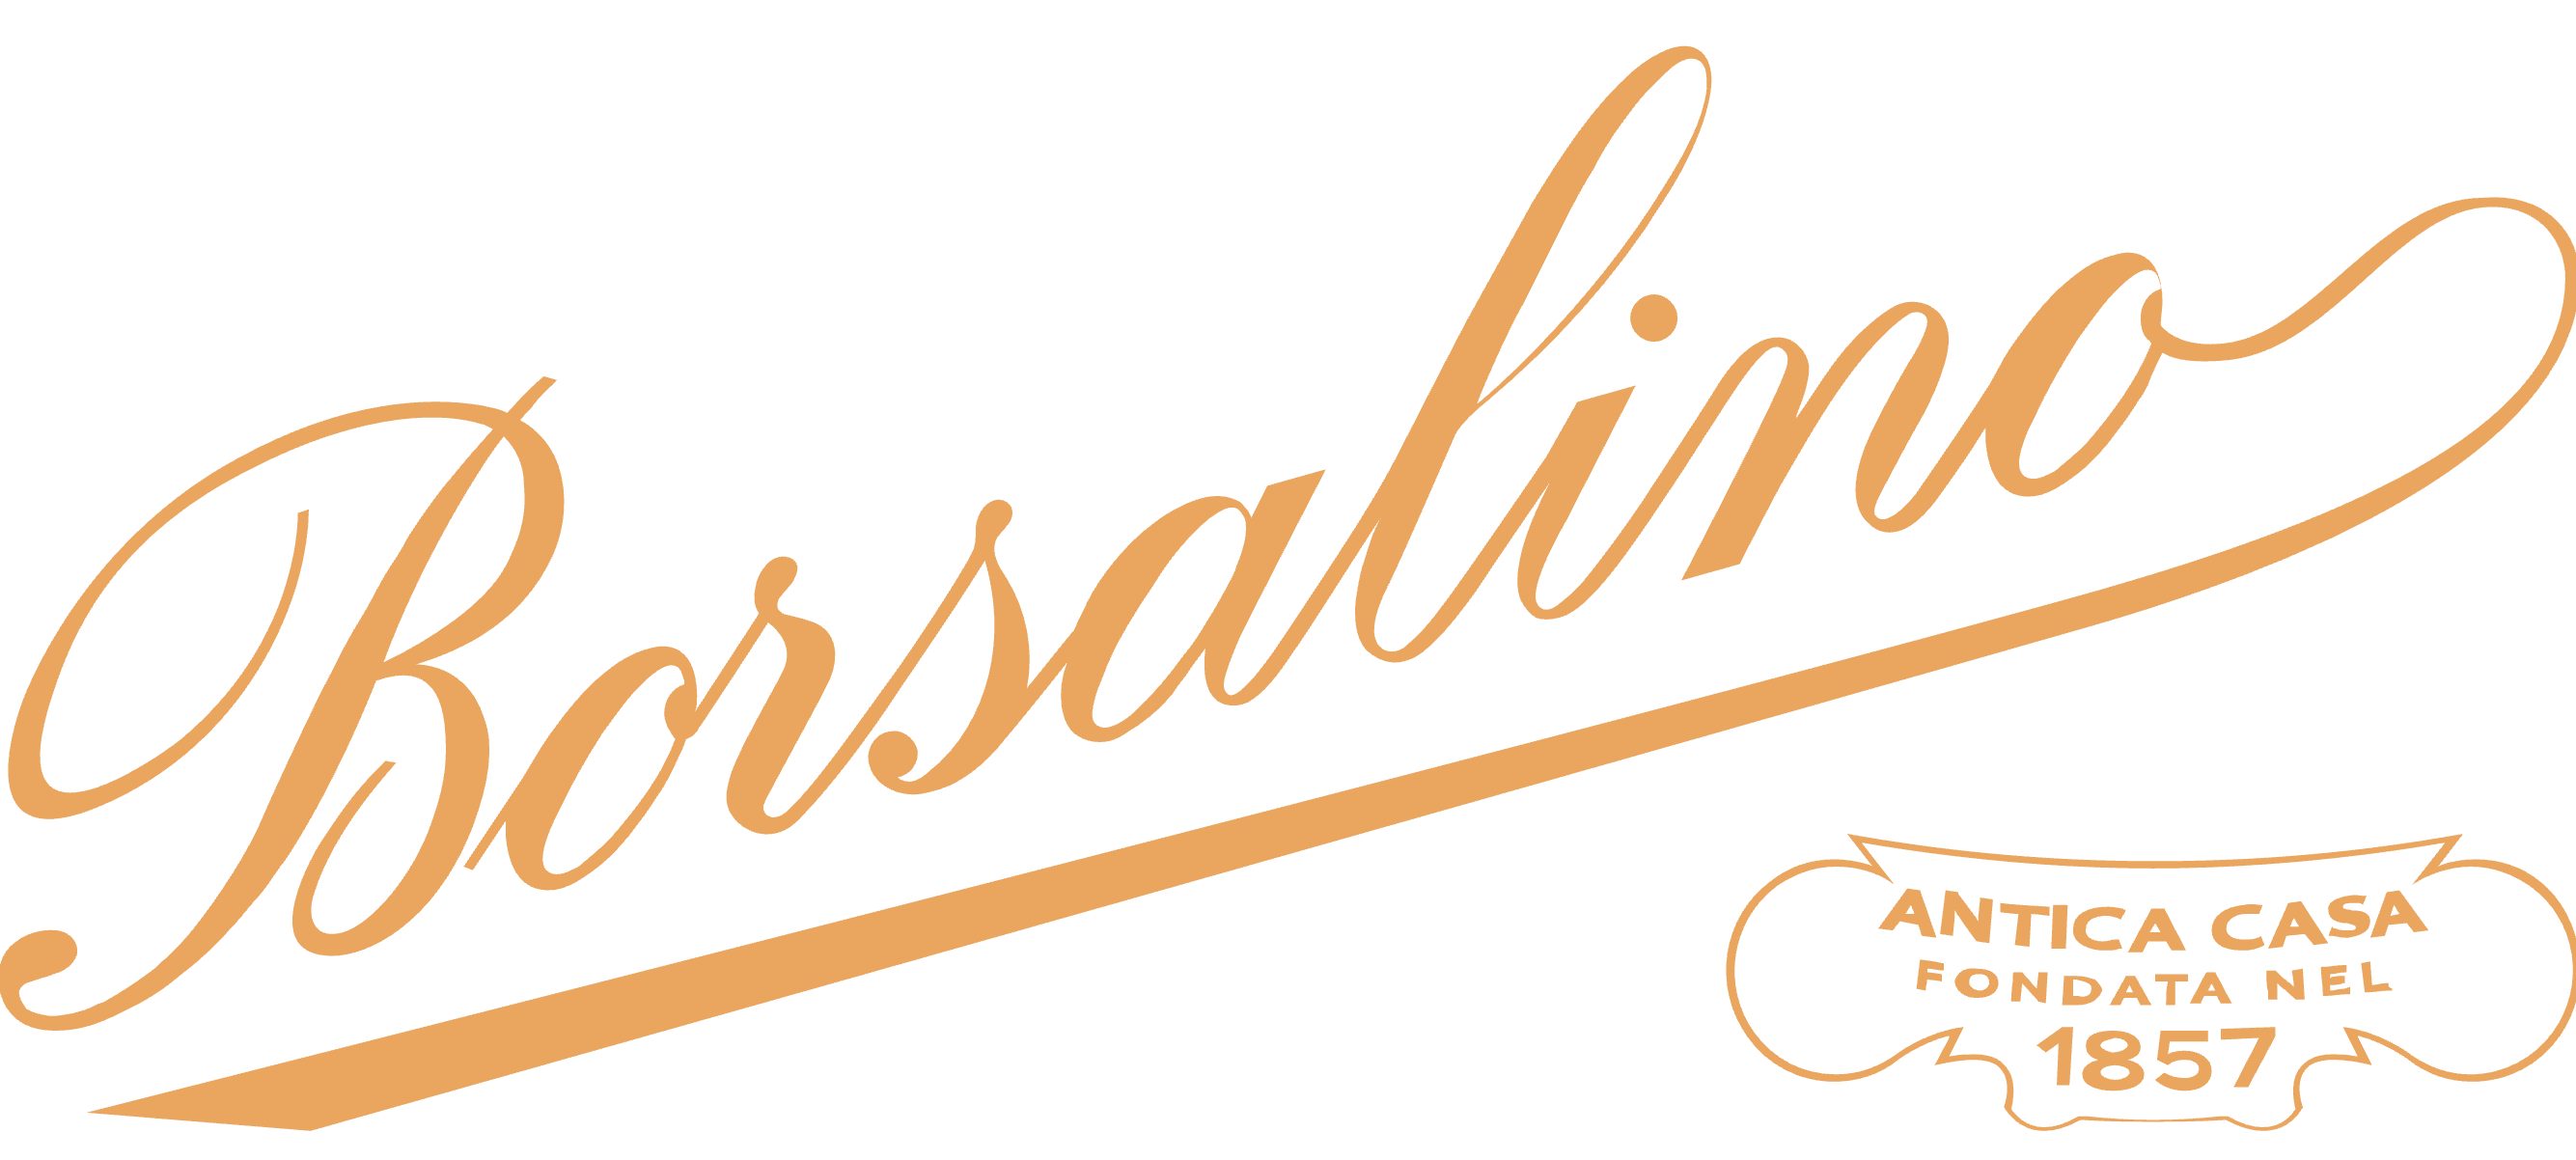 borsalino logo